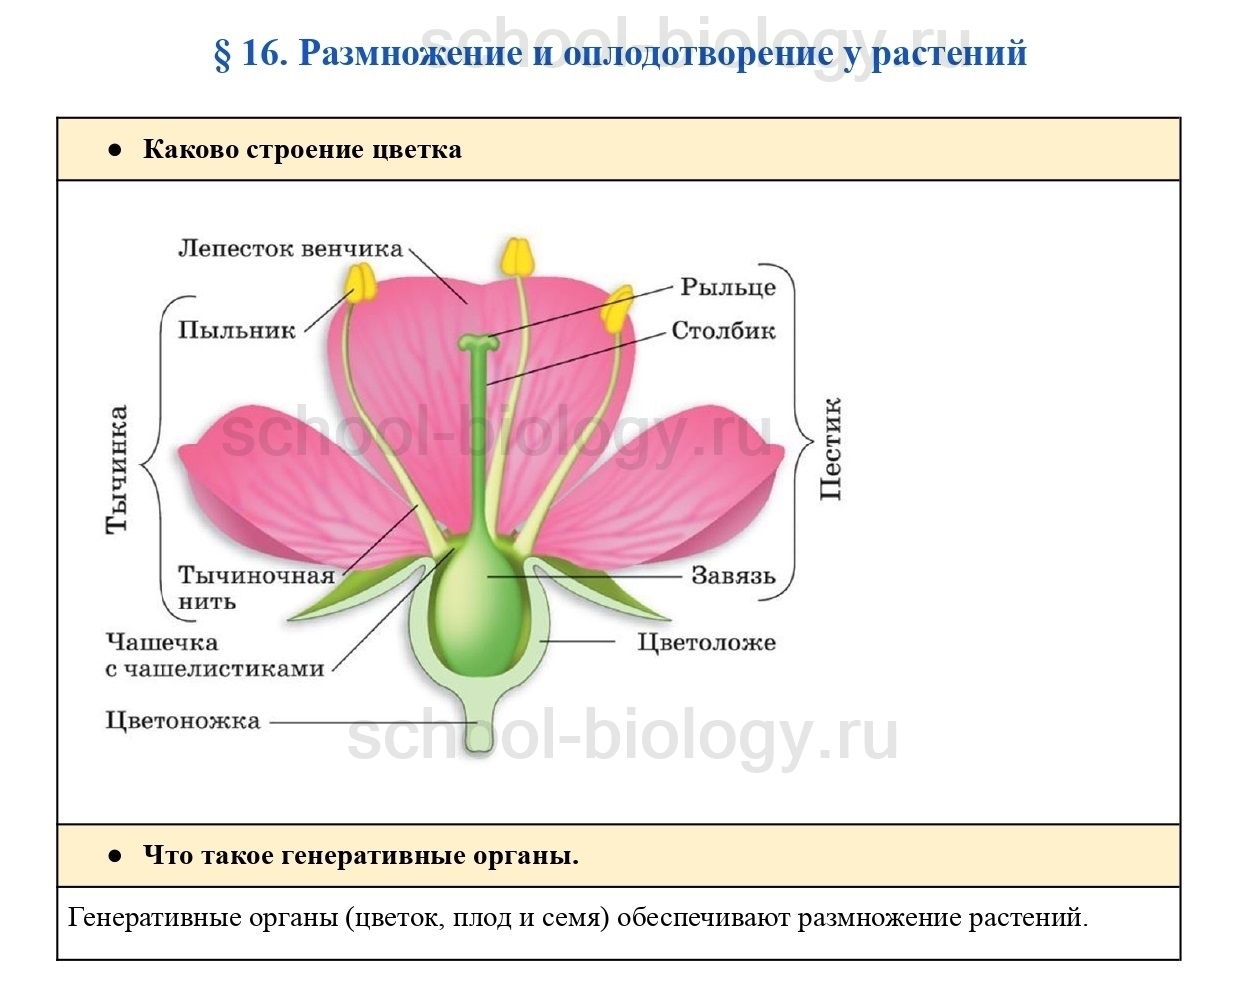 Определение понятию цветок. Строение цветка. Генеративные органы в цветке структуры. Строение цветка орхидеи. Каково строение цветка растения.